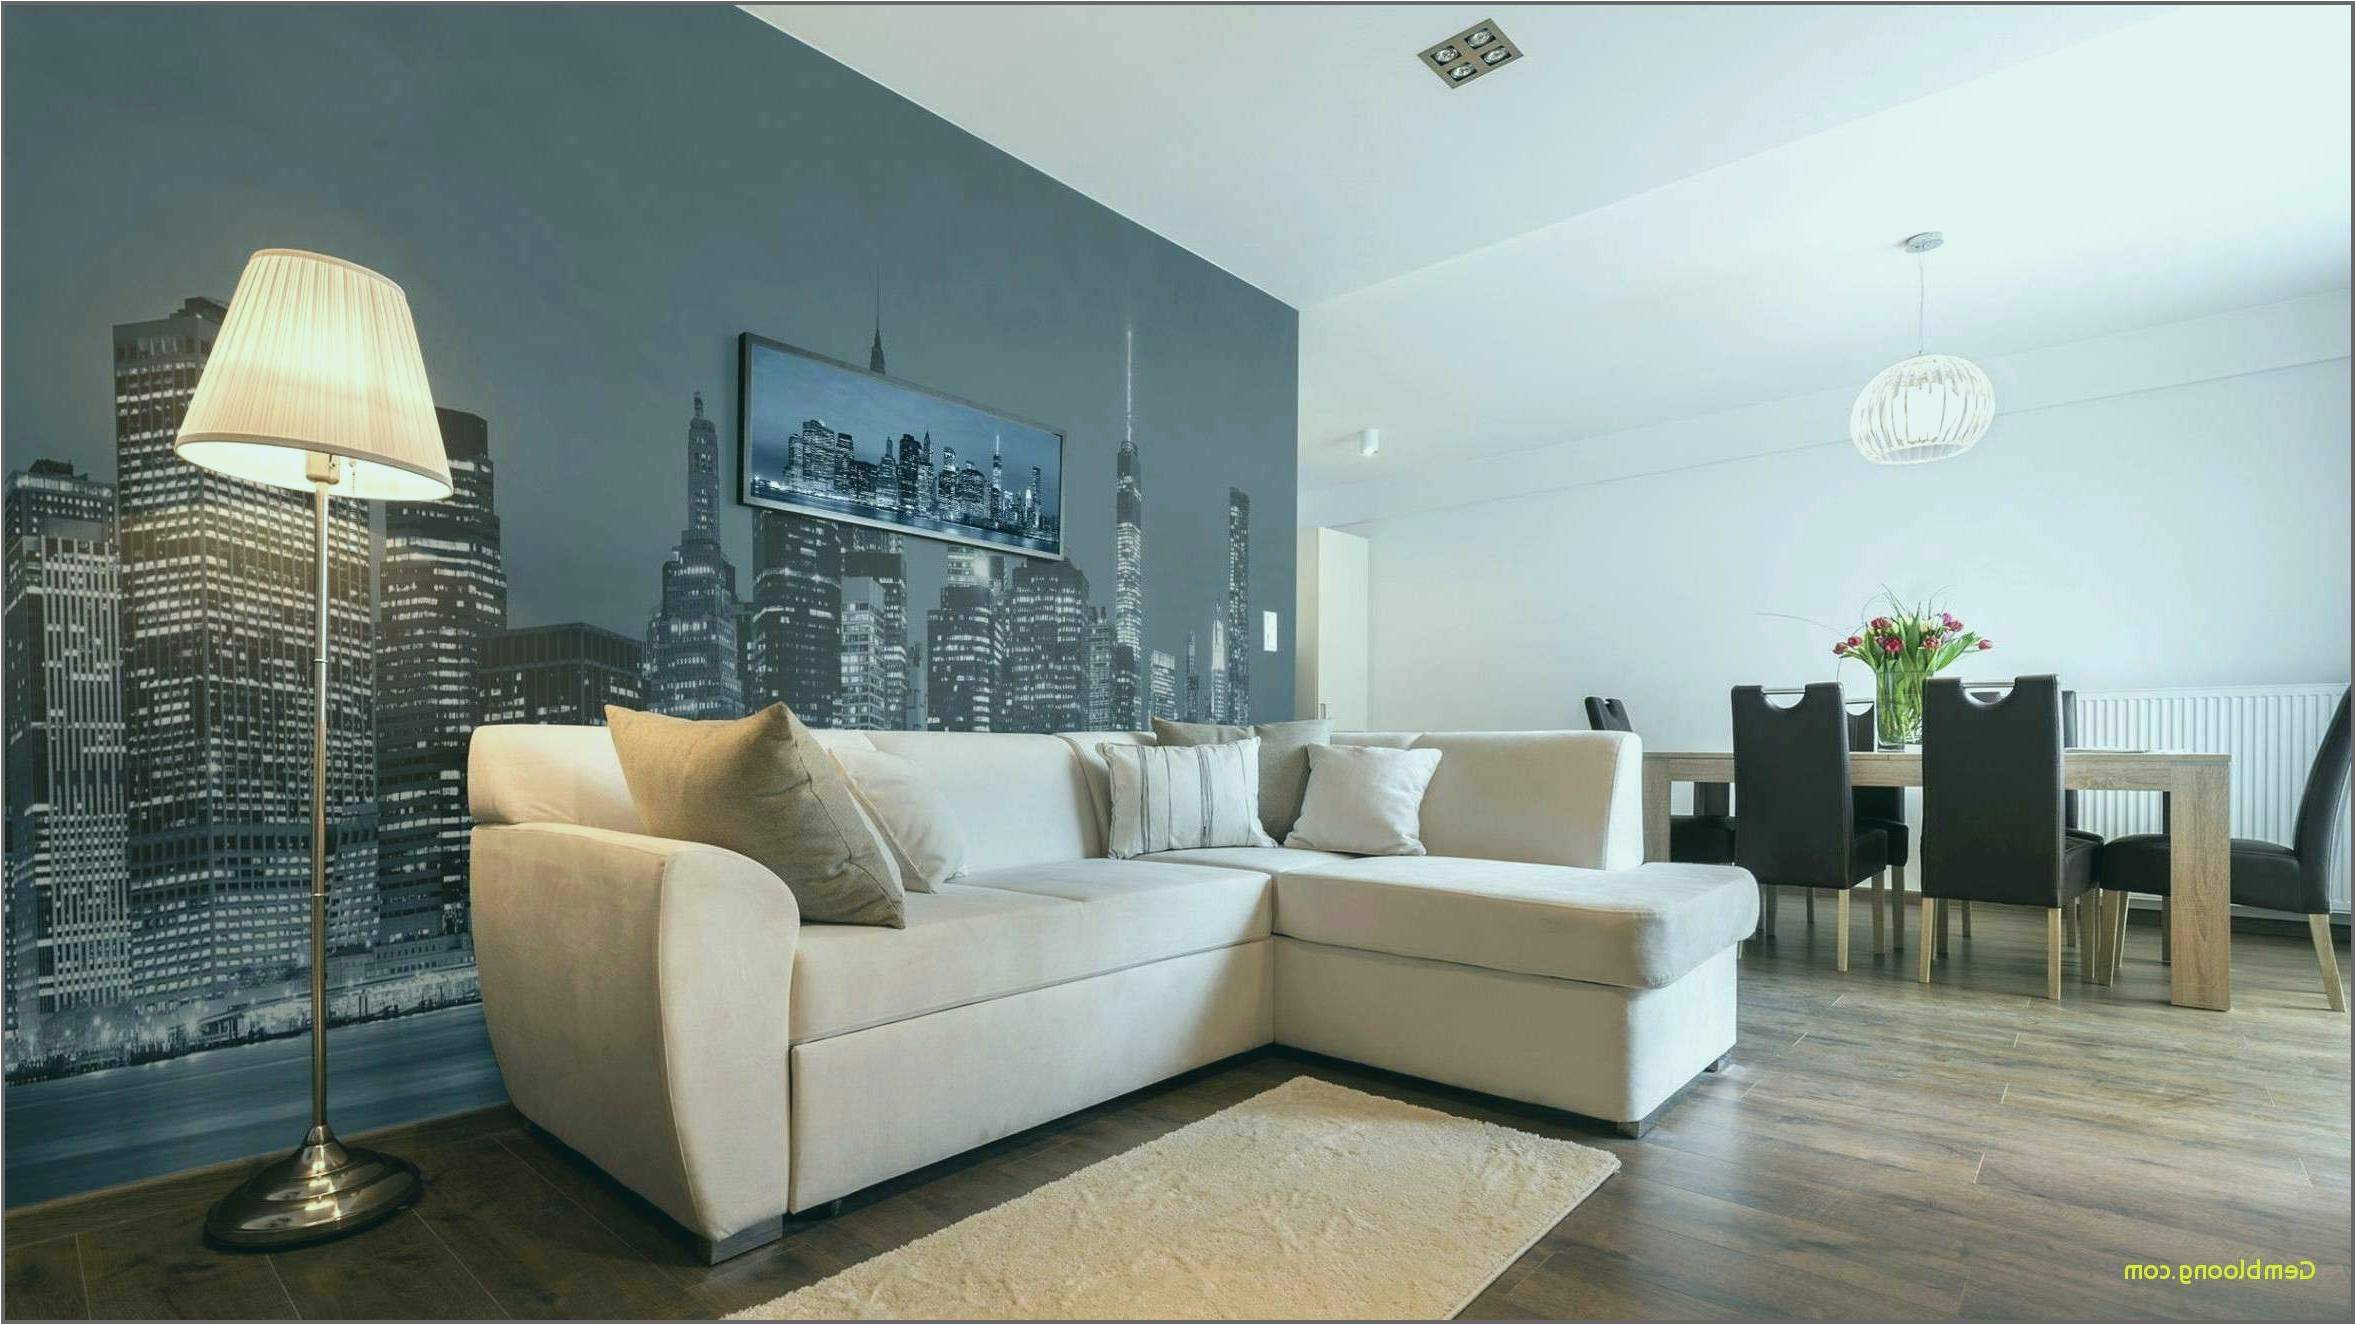 deko wand wohnzimmer schon design wohnzimmer bilder gemutlich wand licht dekoration of deko wand wohnzimmer